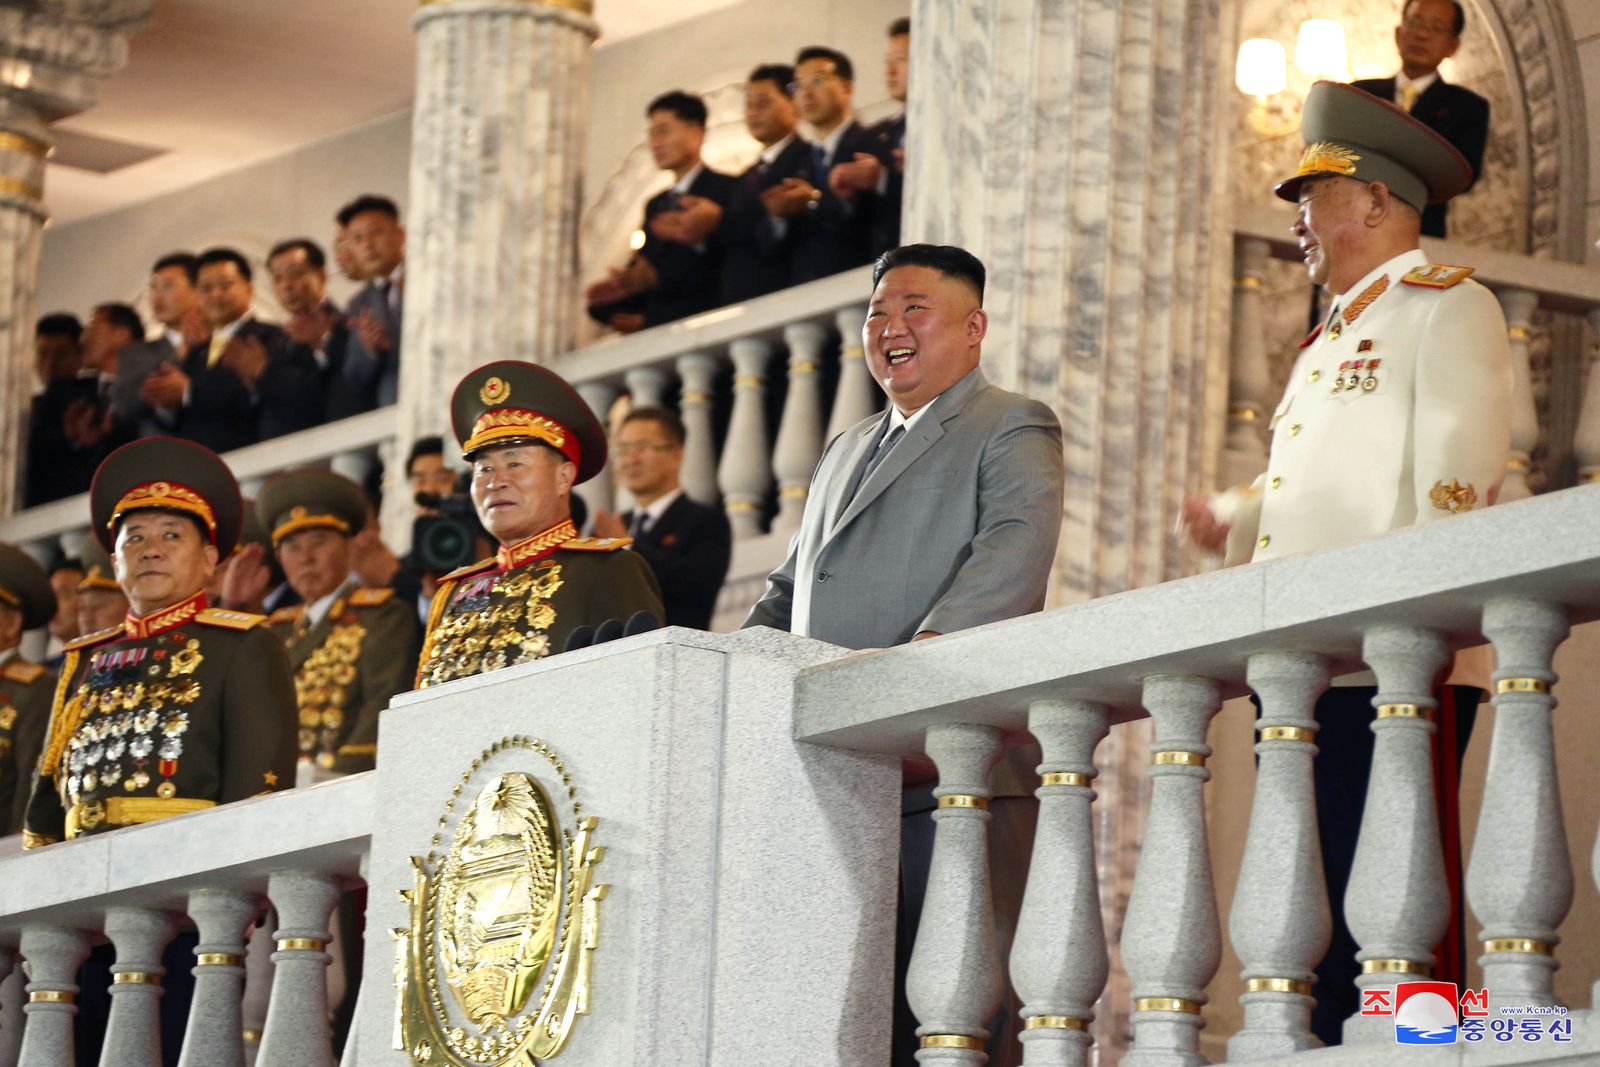 الرئيس الكوري الشمالي كيم جونغ أون مع عدد من قادة إدارته - via REUTERS